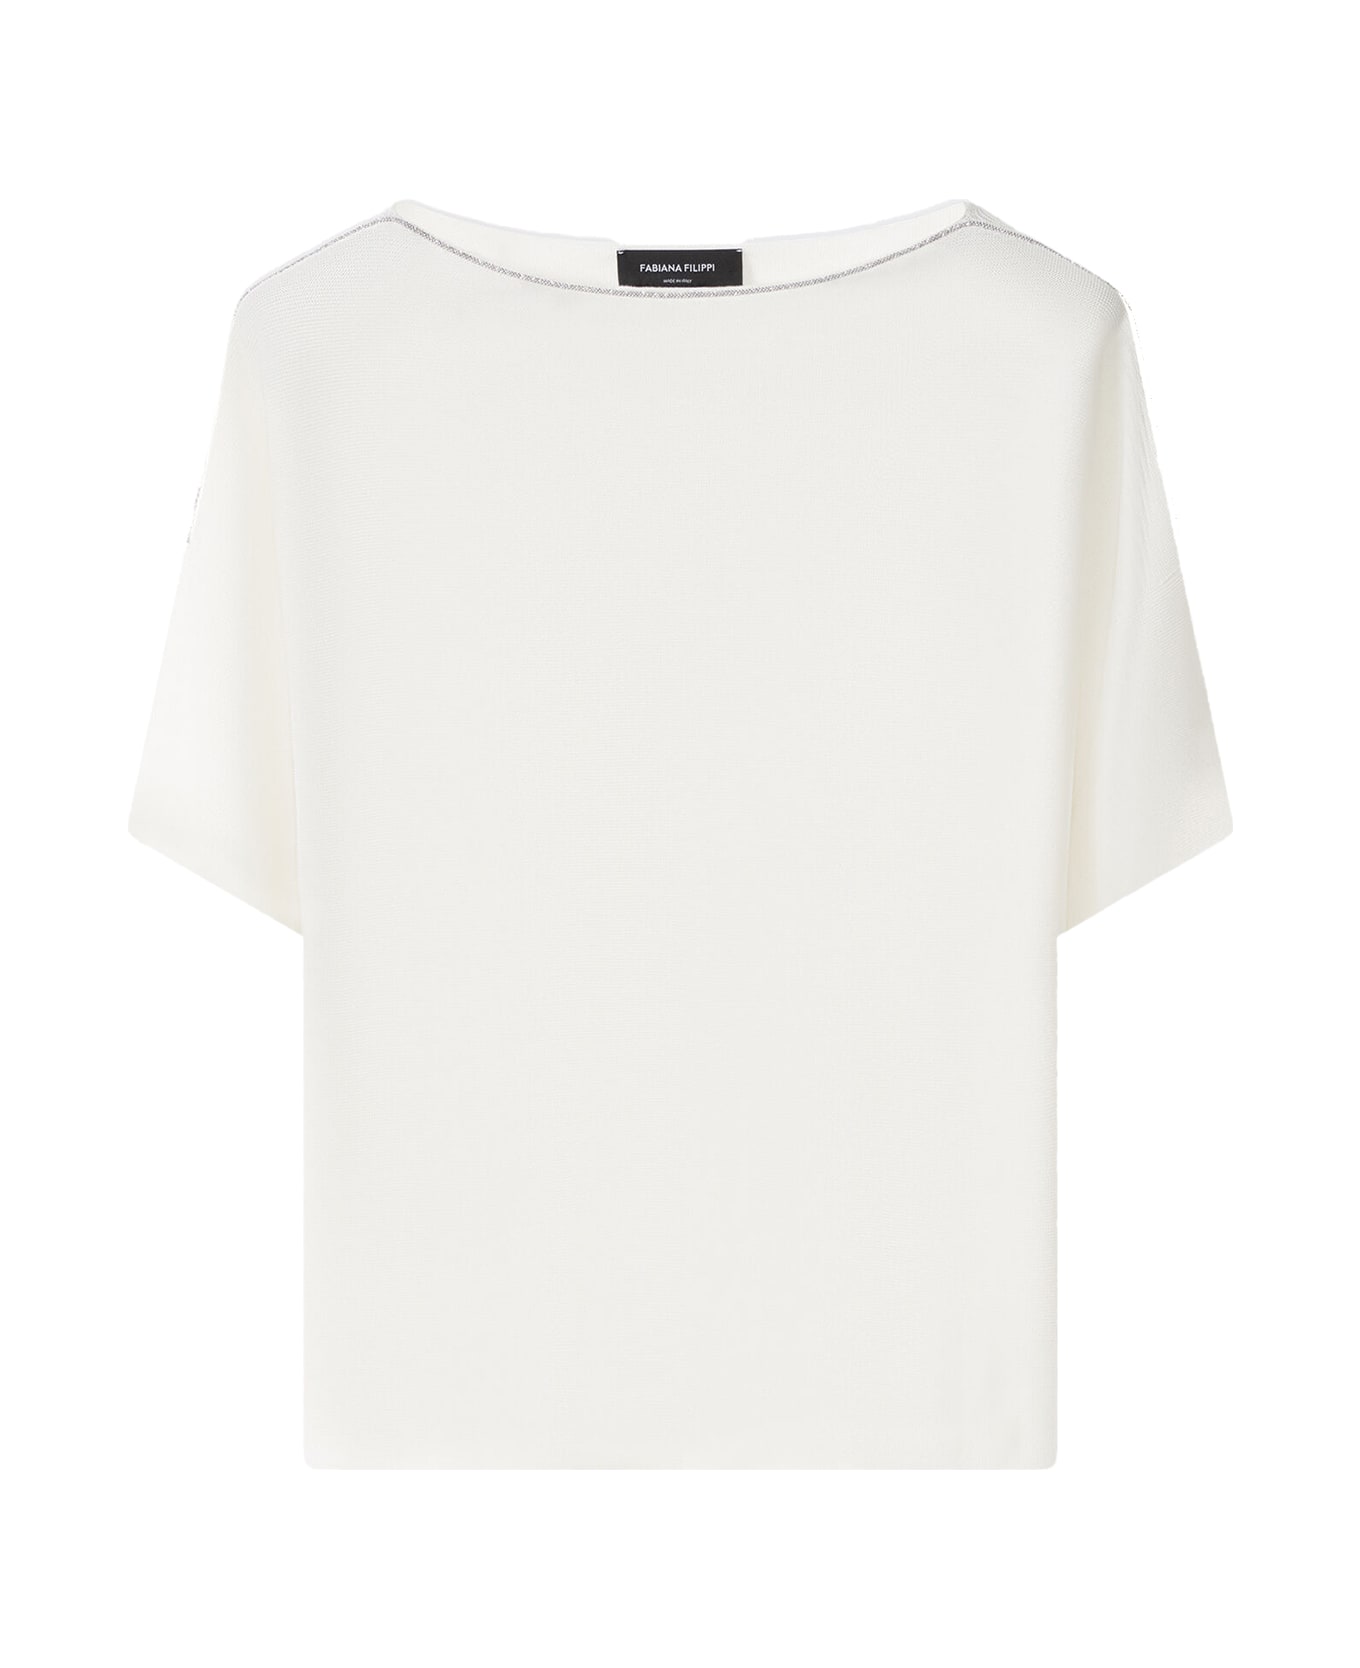 Fabiana Filippi White Organic Cotton T-shirt - BIANCO OTTICO Tシャツ